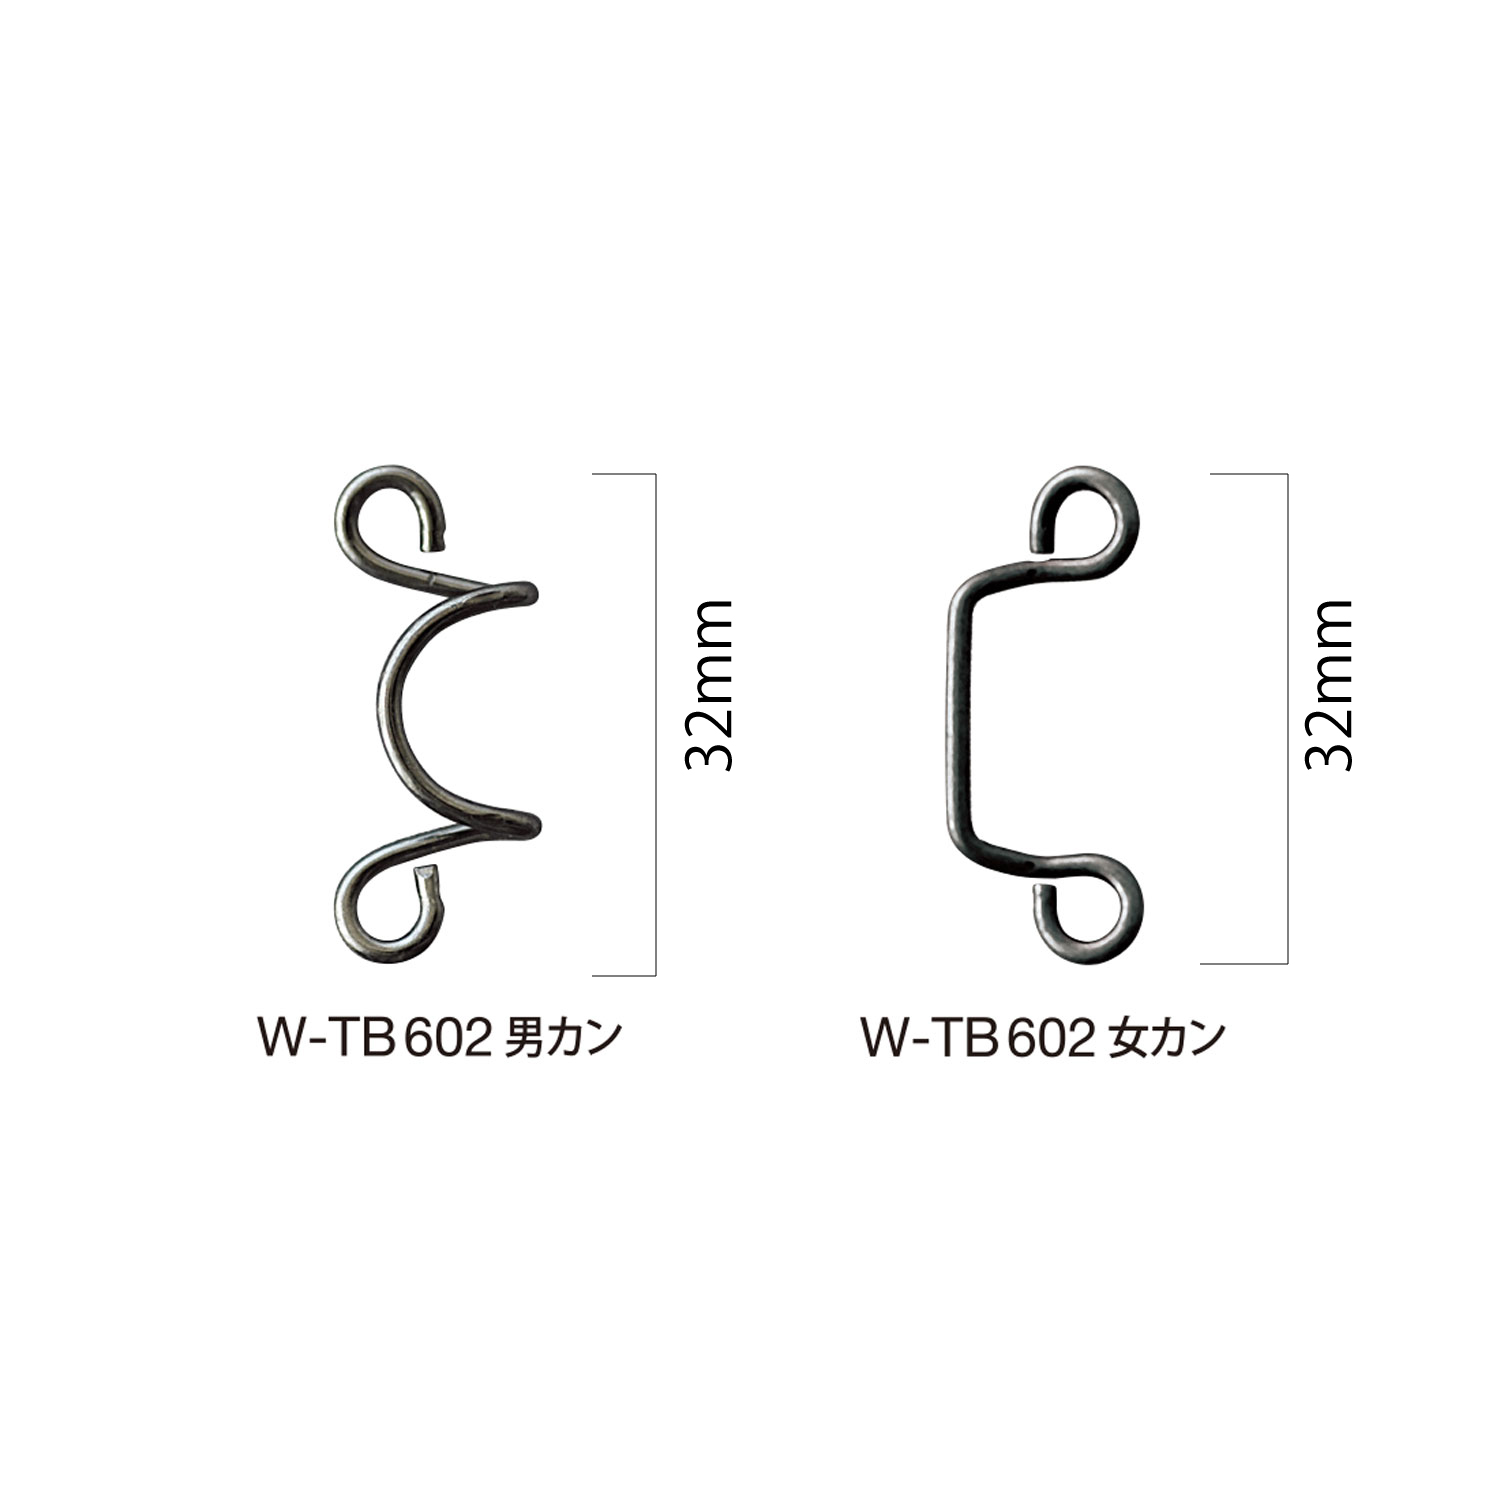 W-TB602 Kragenhaken[Haken] Morito